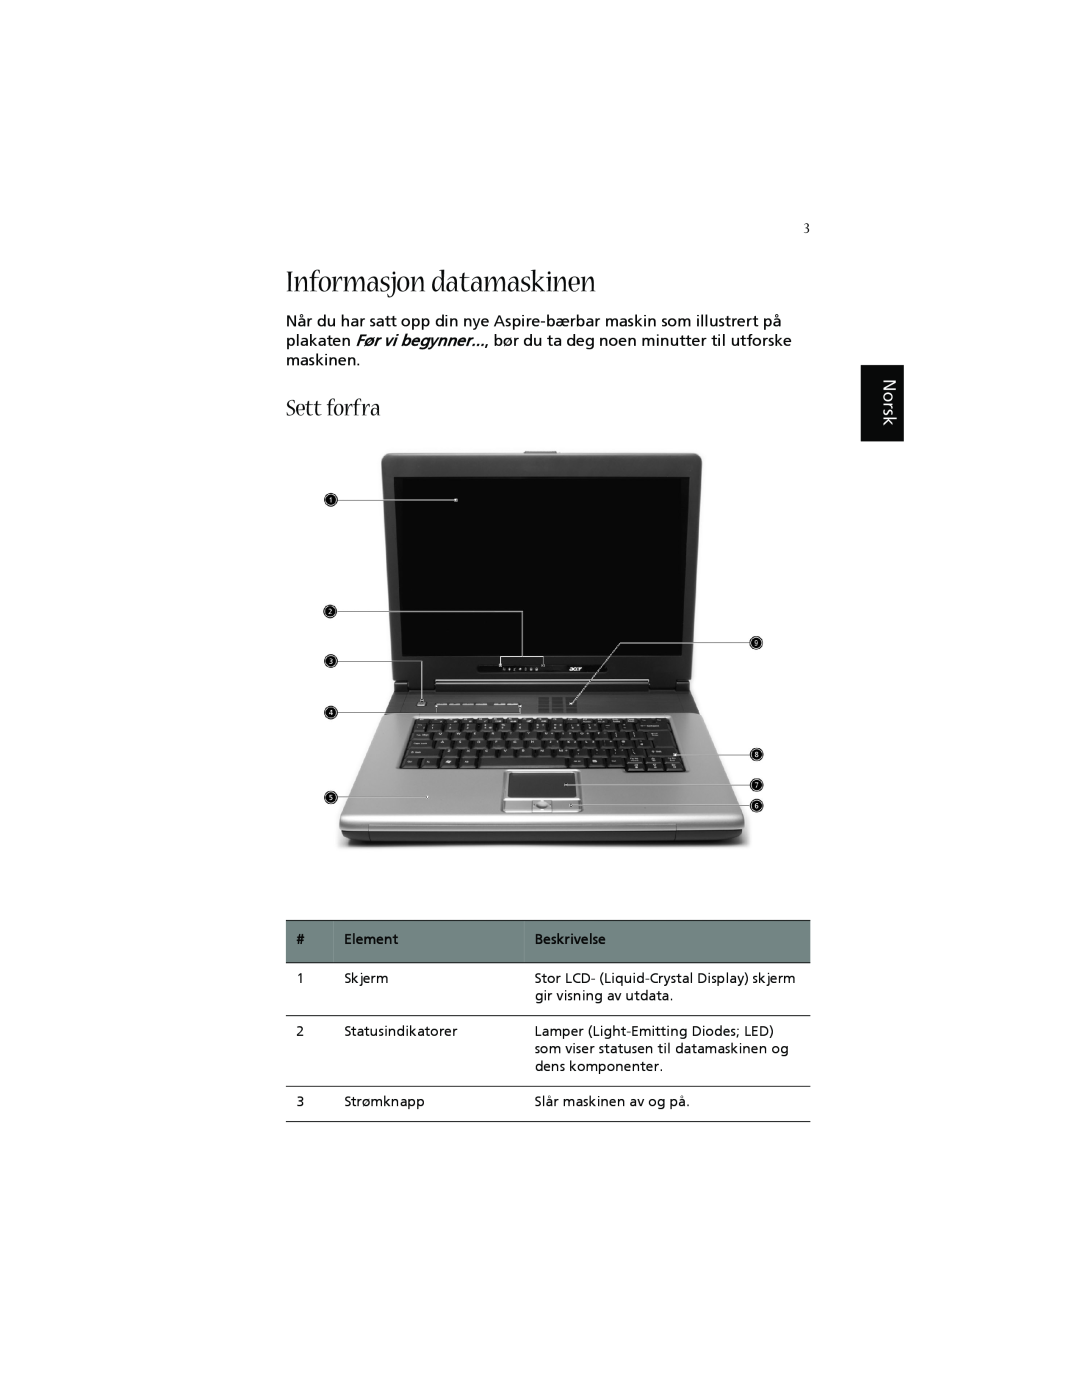 Acer 1660 manual Informasjon datamaskinen, Sett forfra, Norsk, Element, Beskrivelse 